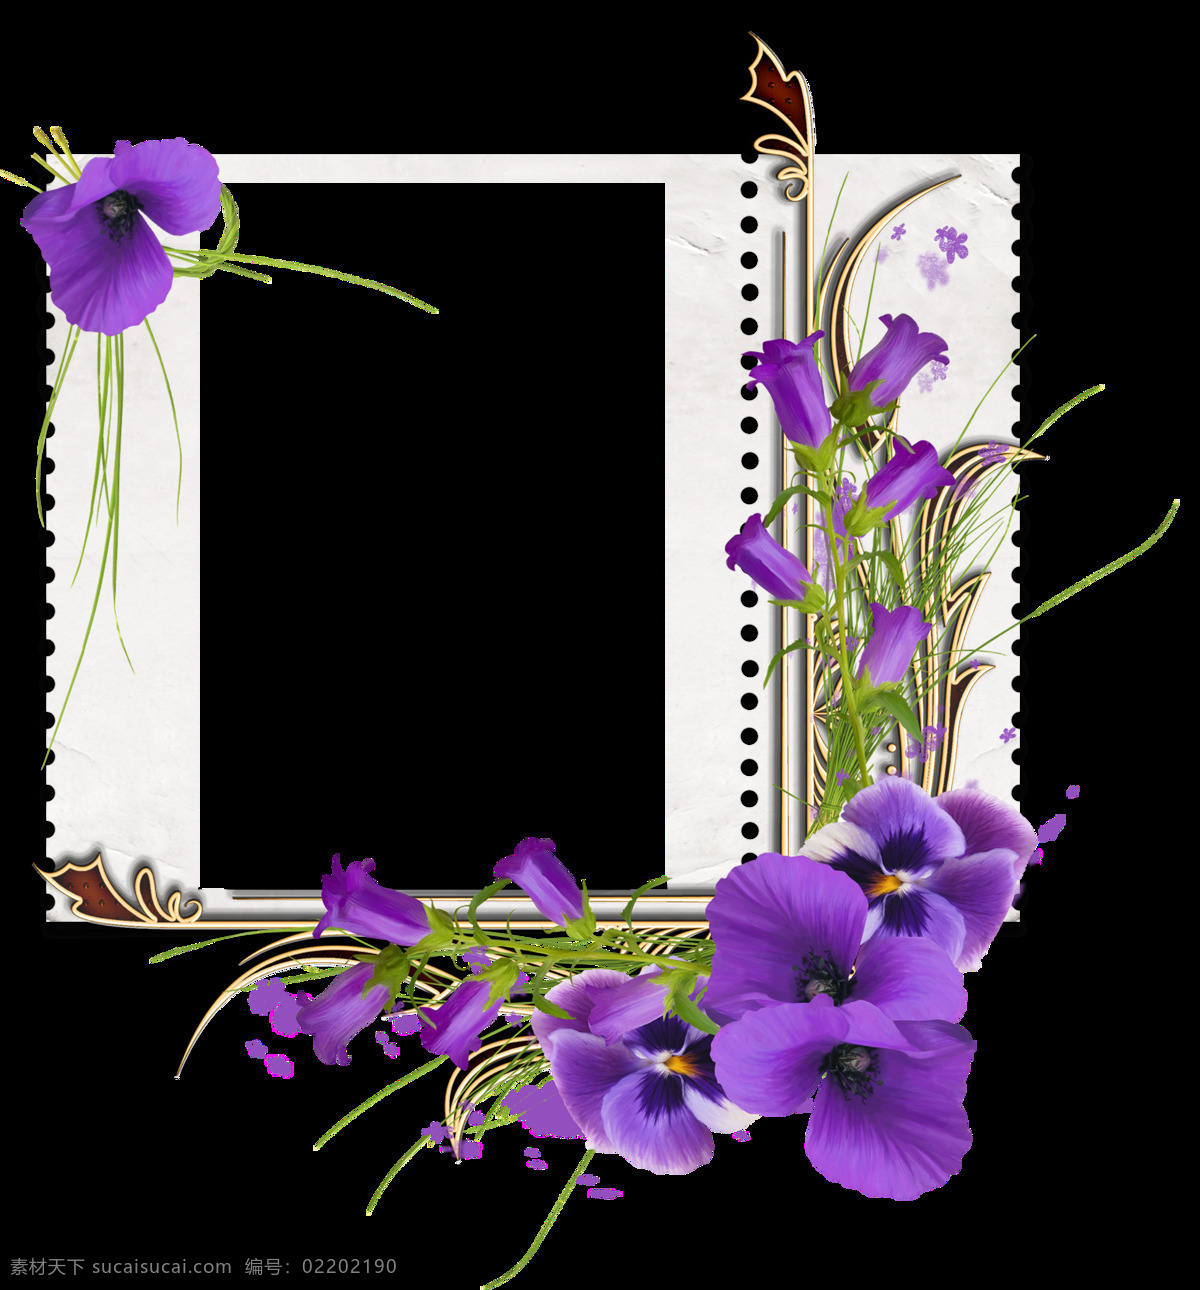 现代感 简约 框架 透明 紫色 鲜花 枝叶 纹理 透明素材 免扣素材 装饰图片